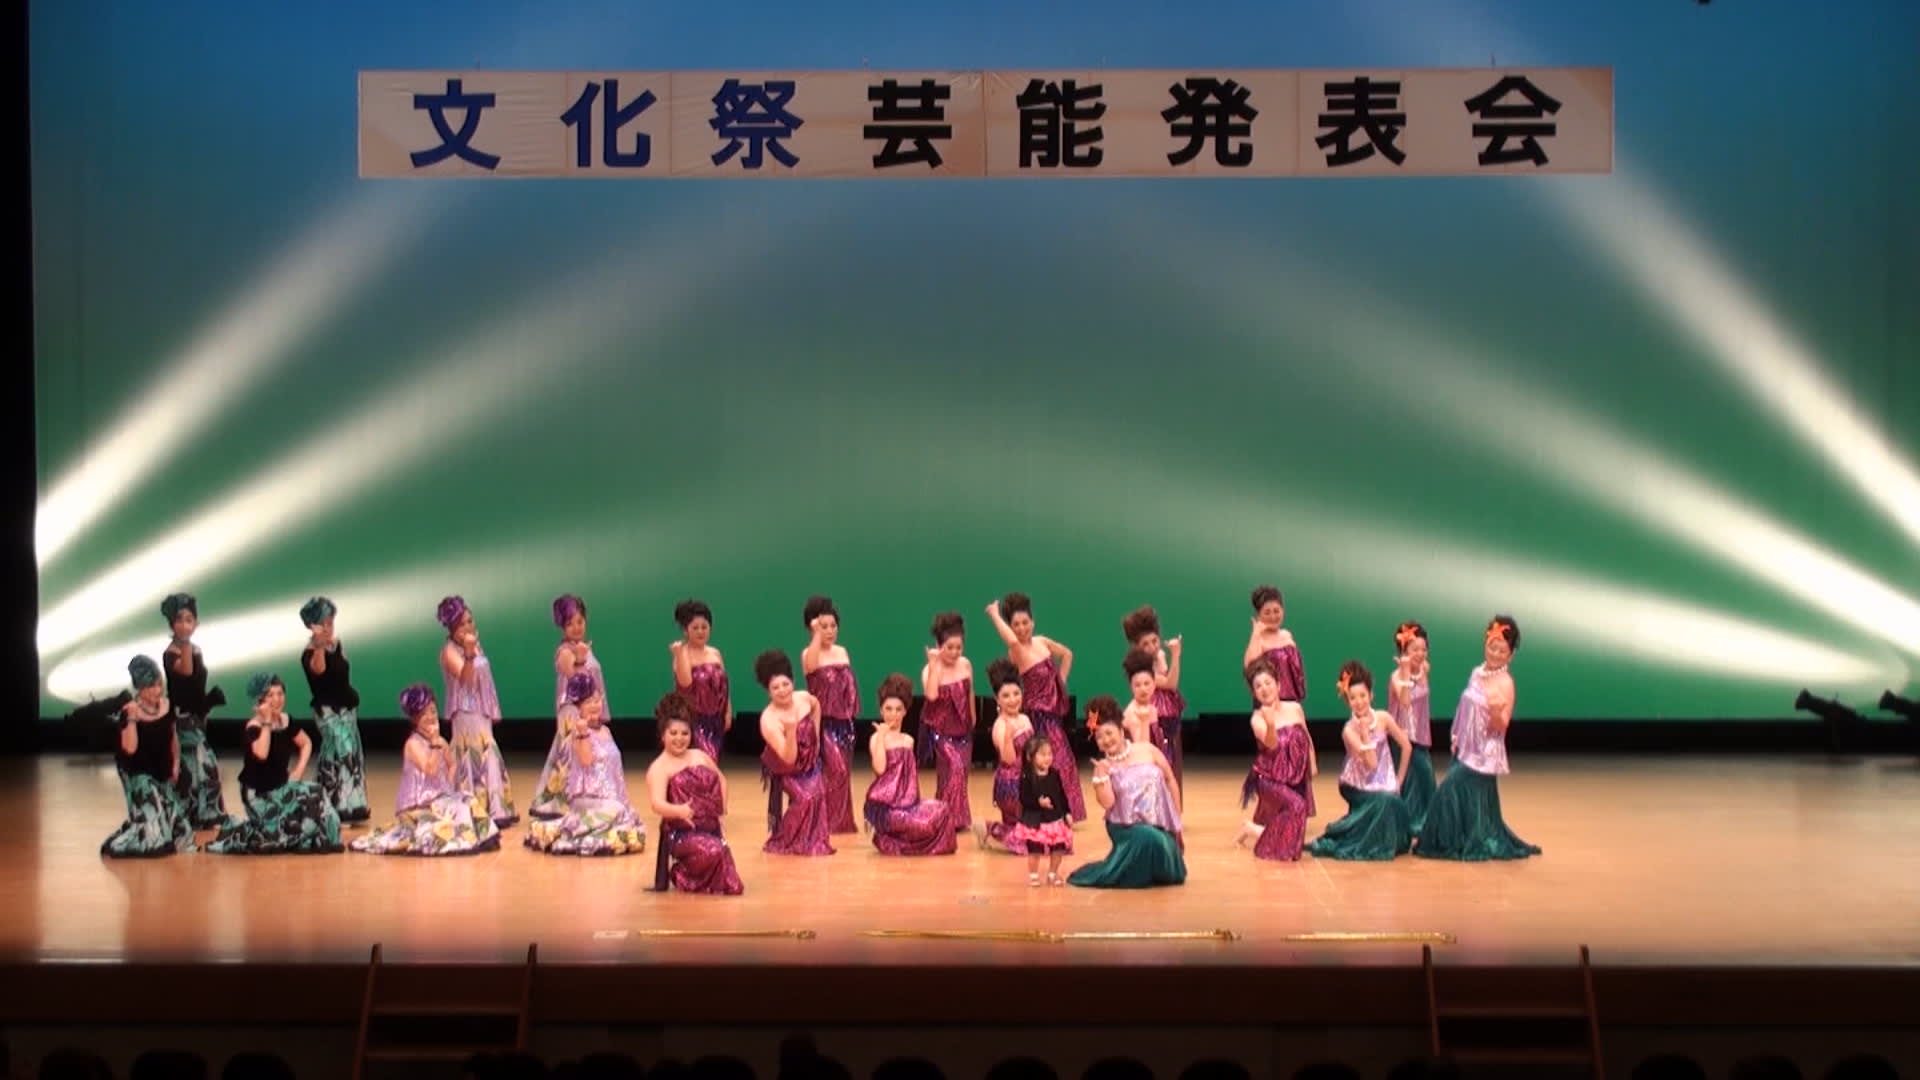 14日光市民文化祭 舞蛙堂本舗リターンズ スタジオmダンスアカデミーblog